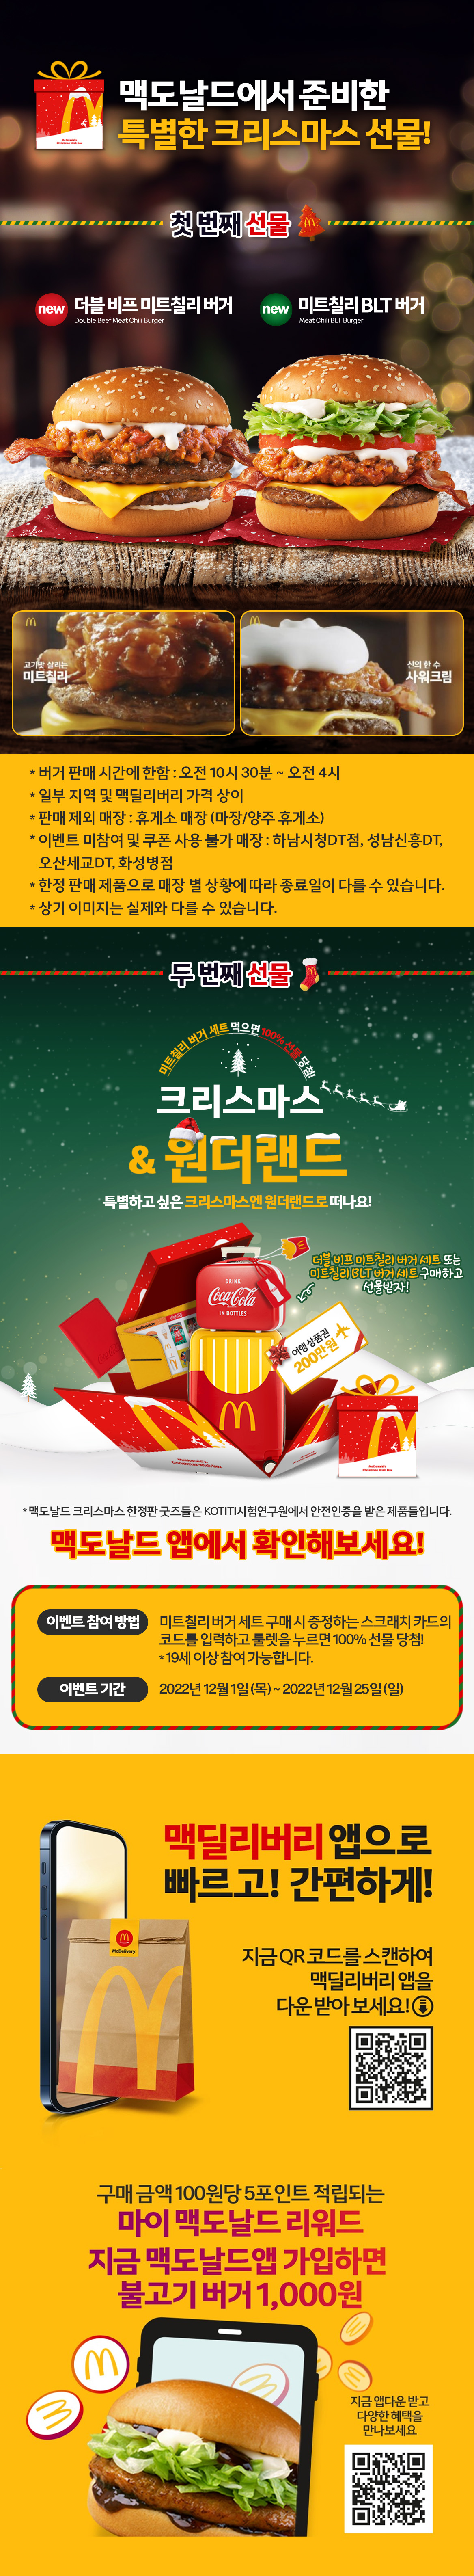 미트칠리 버거 세트 먹고 크리스마스 선물 받으세요! | 맥도날드